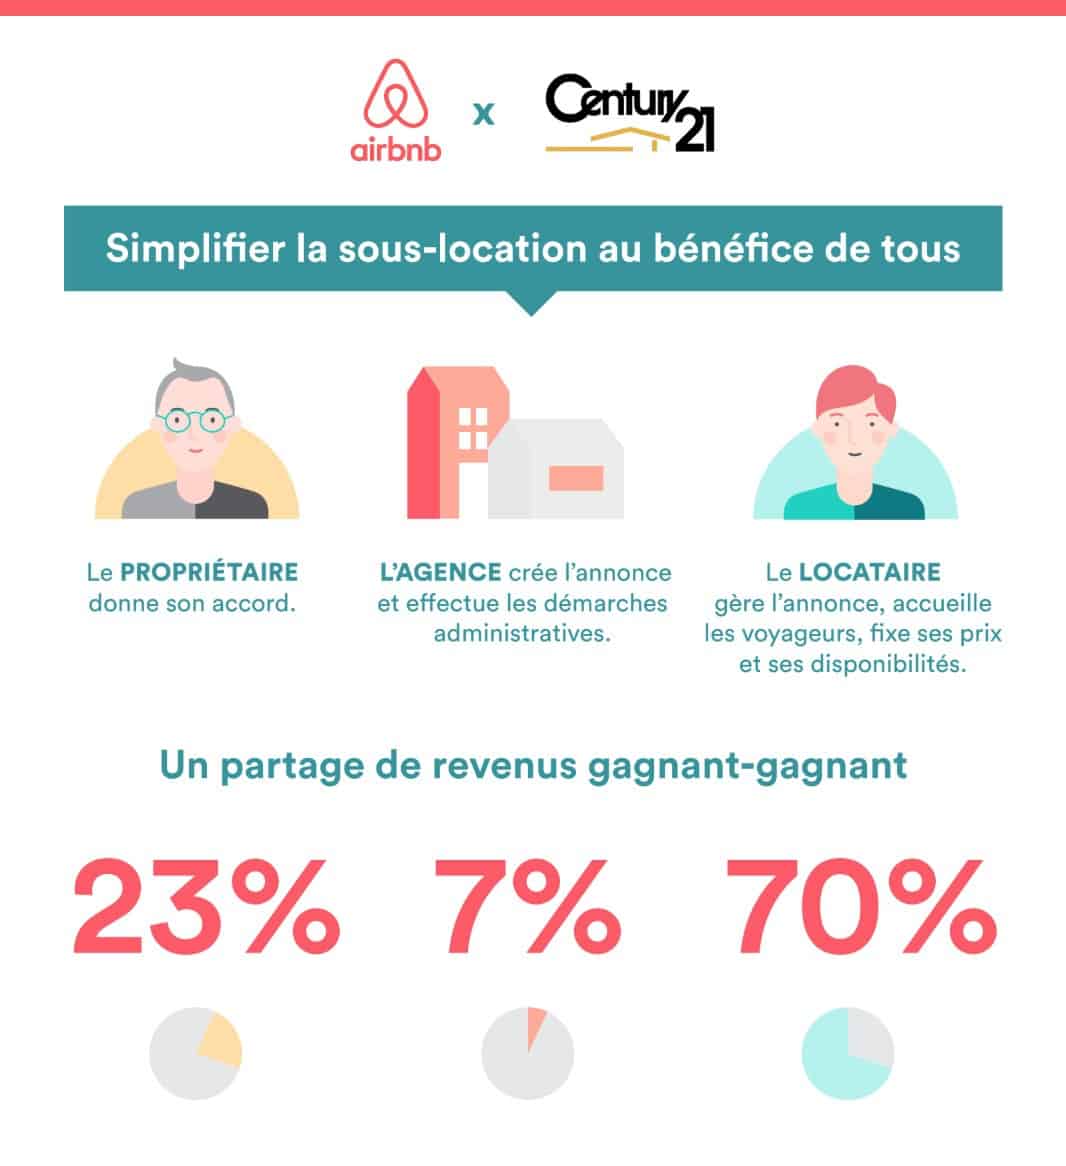 Airbnb et Century 21 s'allient pour simplifier la sous-location en France